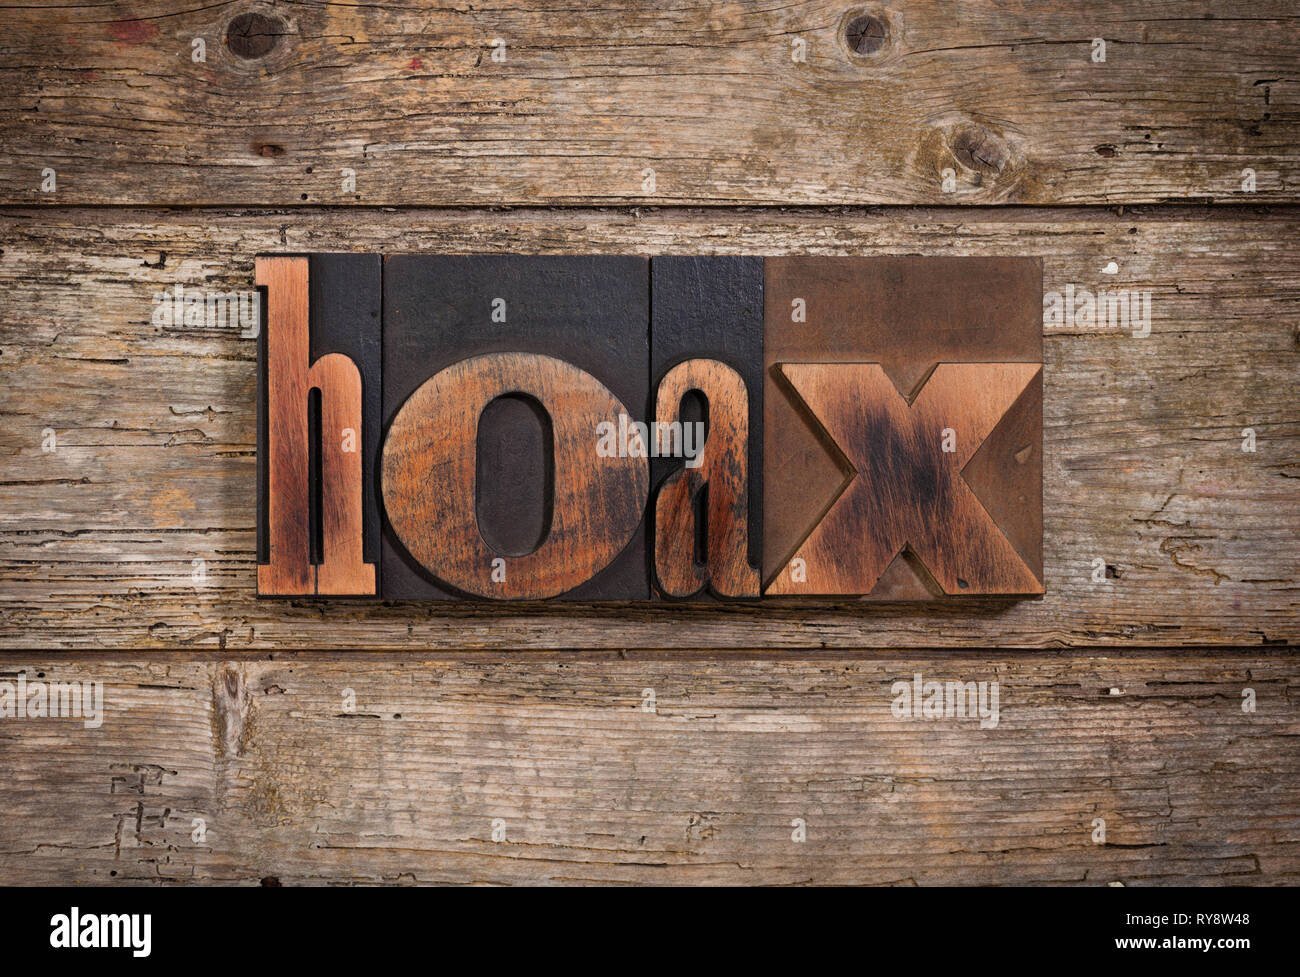 Hoax, einzelnes Wort mit Vintage Buchdruck Blöcke auf rustikalen Holzmöbeln Hintergrund Stockfoto